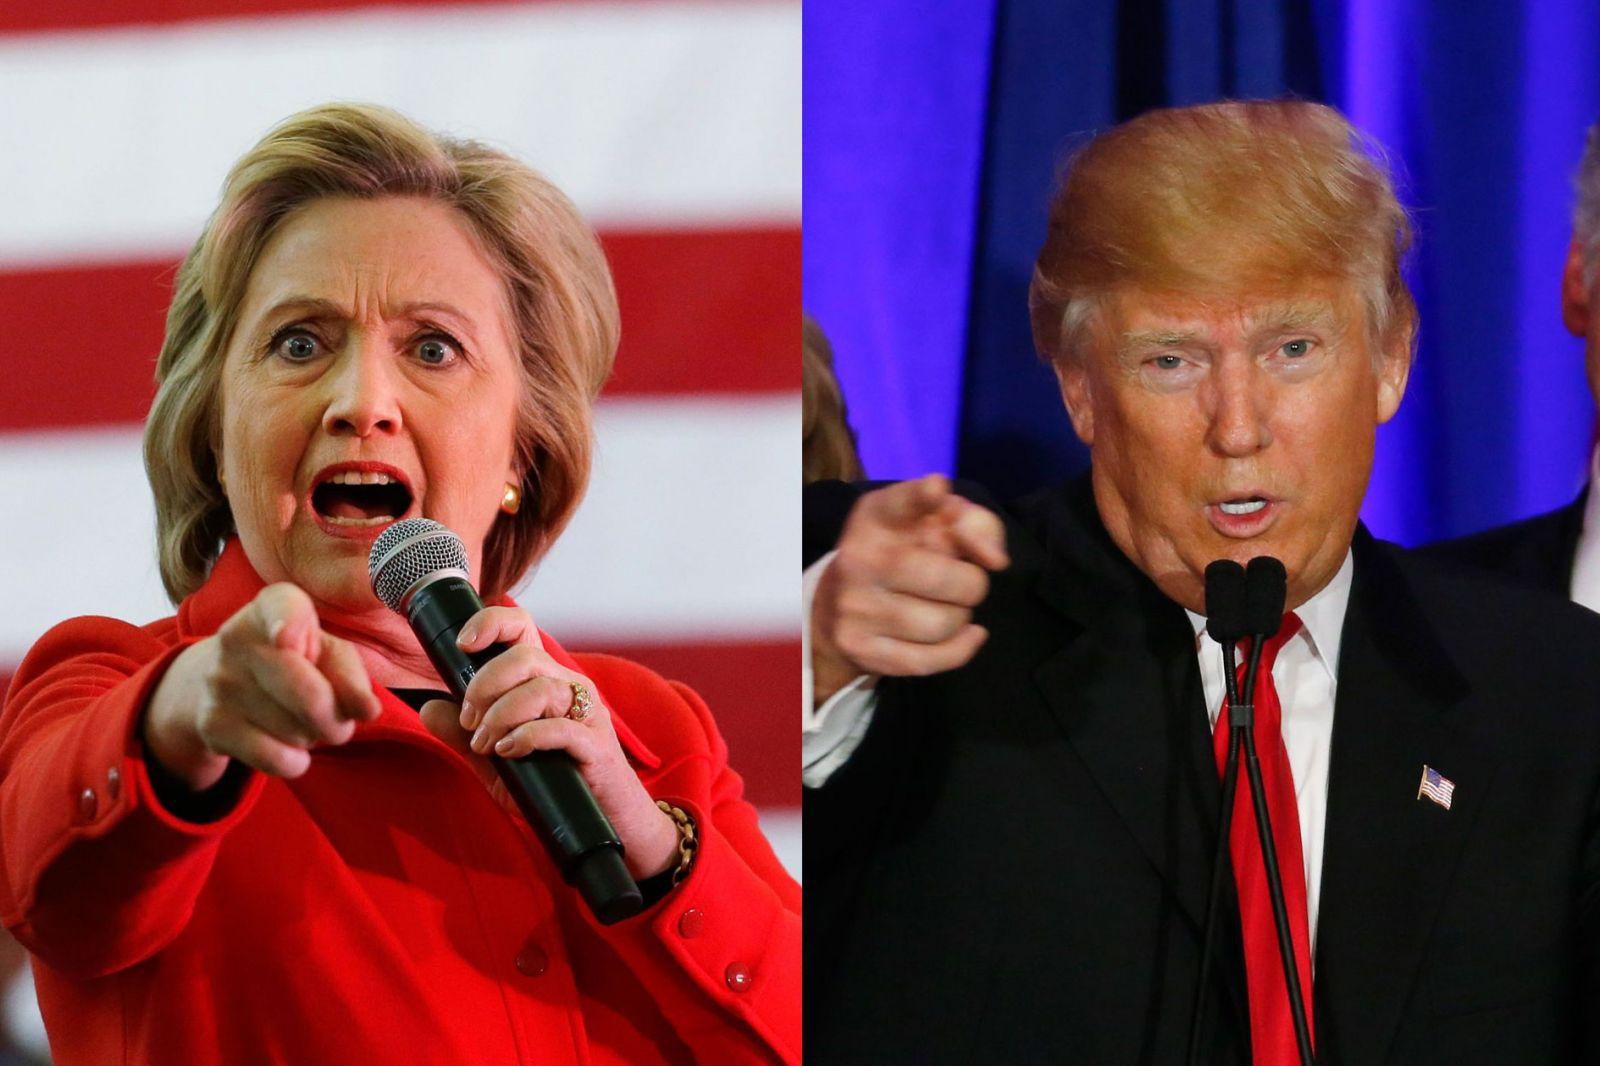 Trump wins key prize of Ohio, Clinton takes Virginia and Colorado